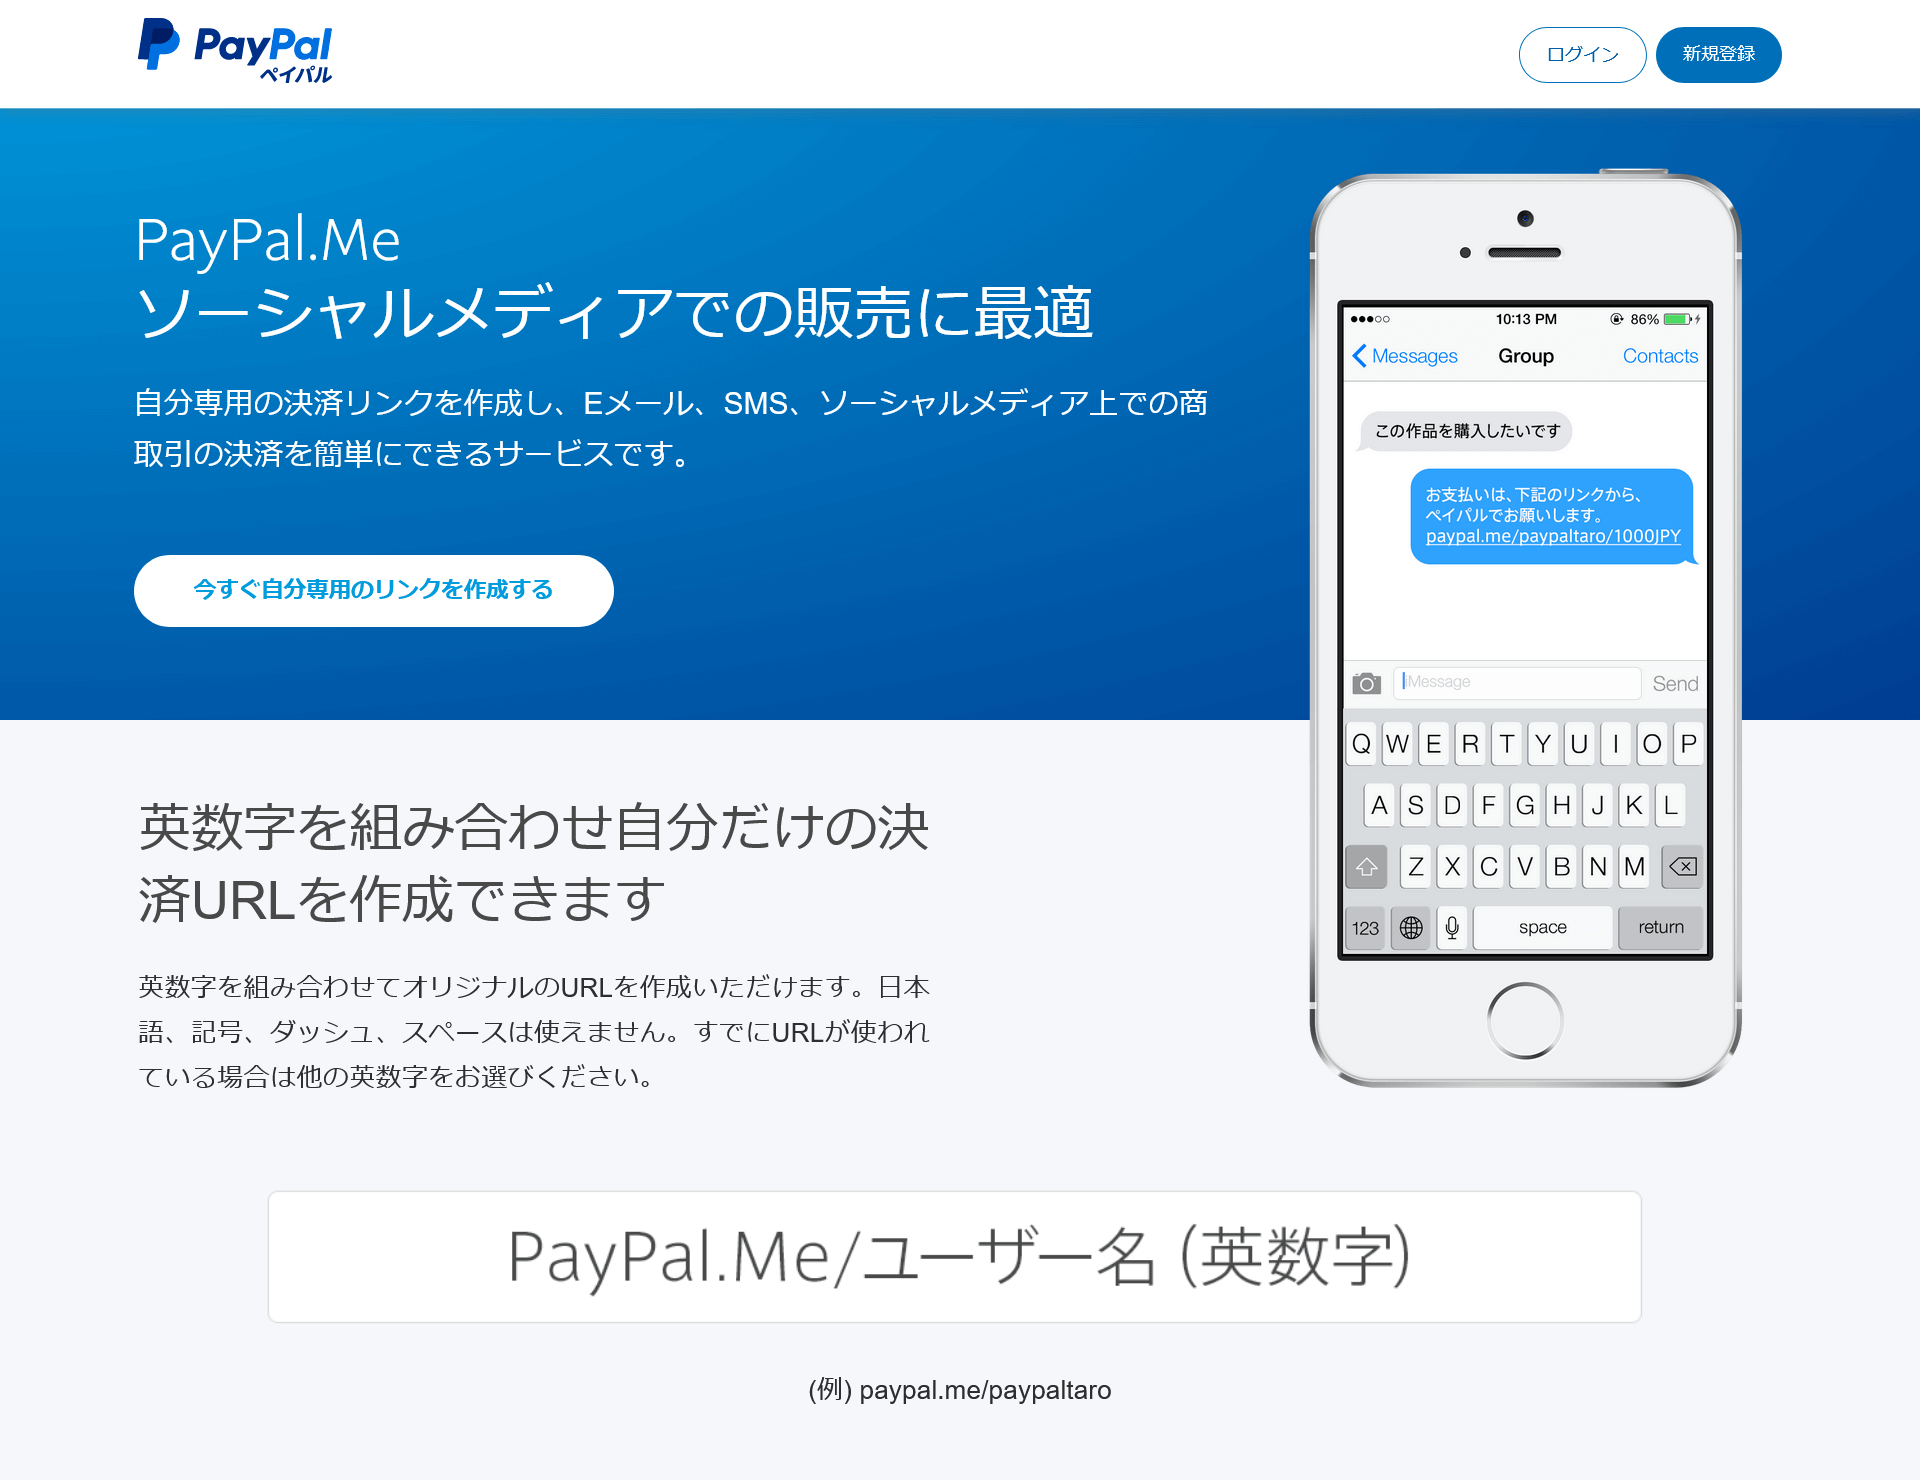 PayPal.Me日本語版トップページのスクリーンショット